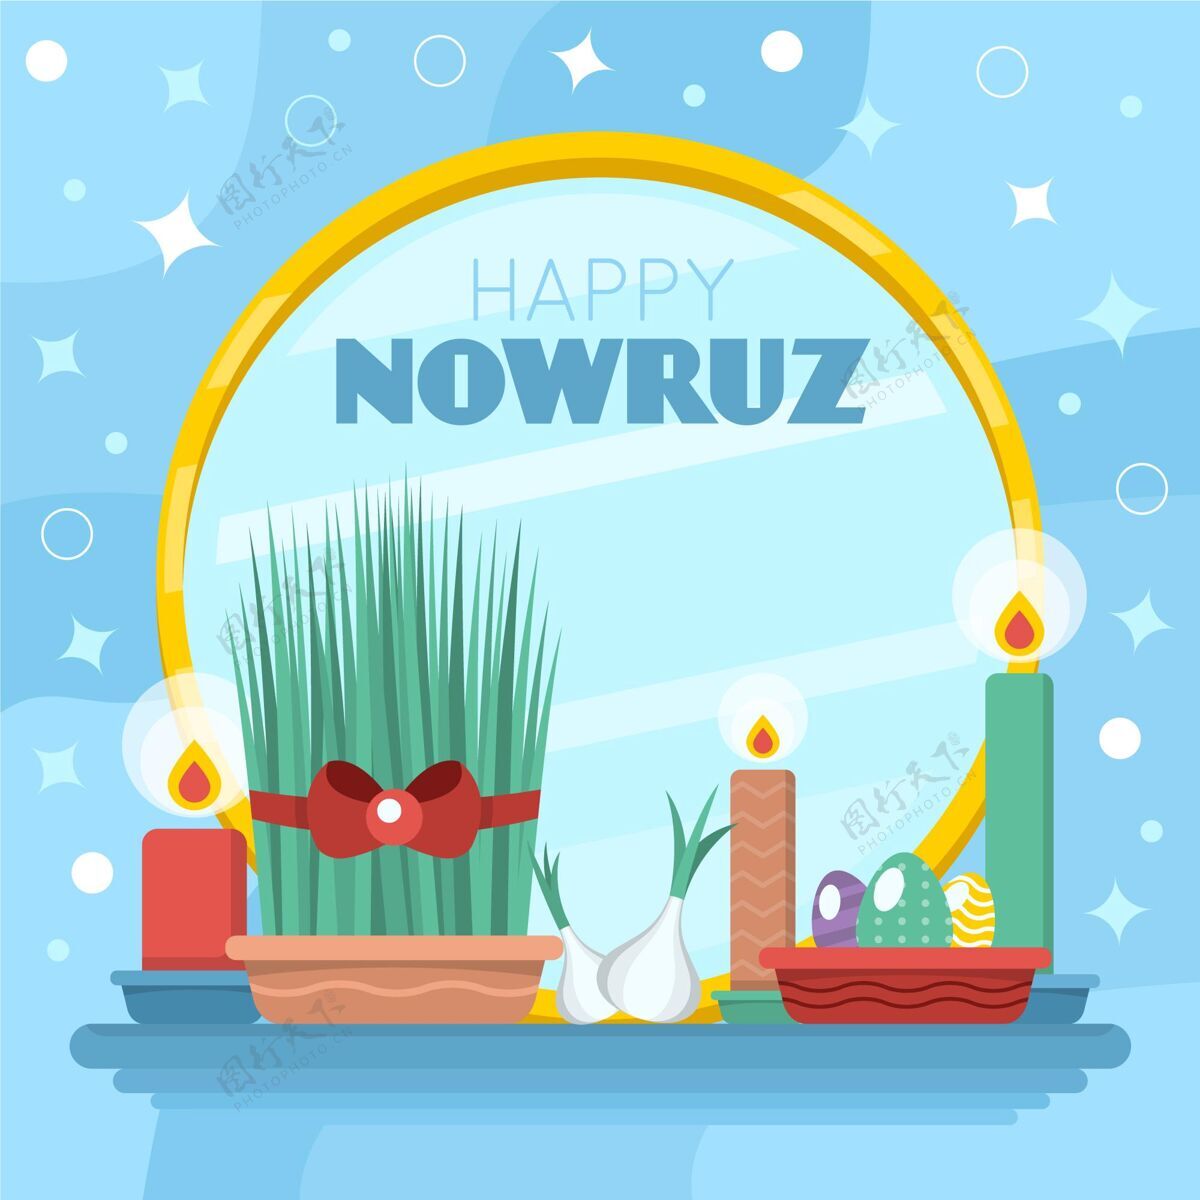 节日Happynowruz活动平面设计插图平面伊朗插图